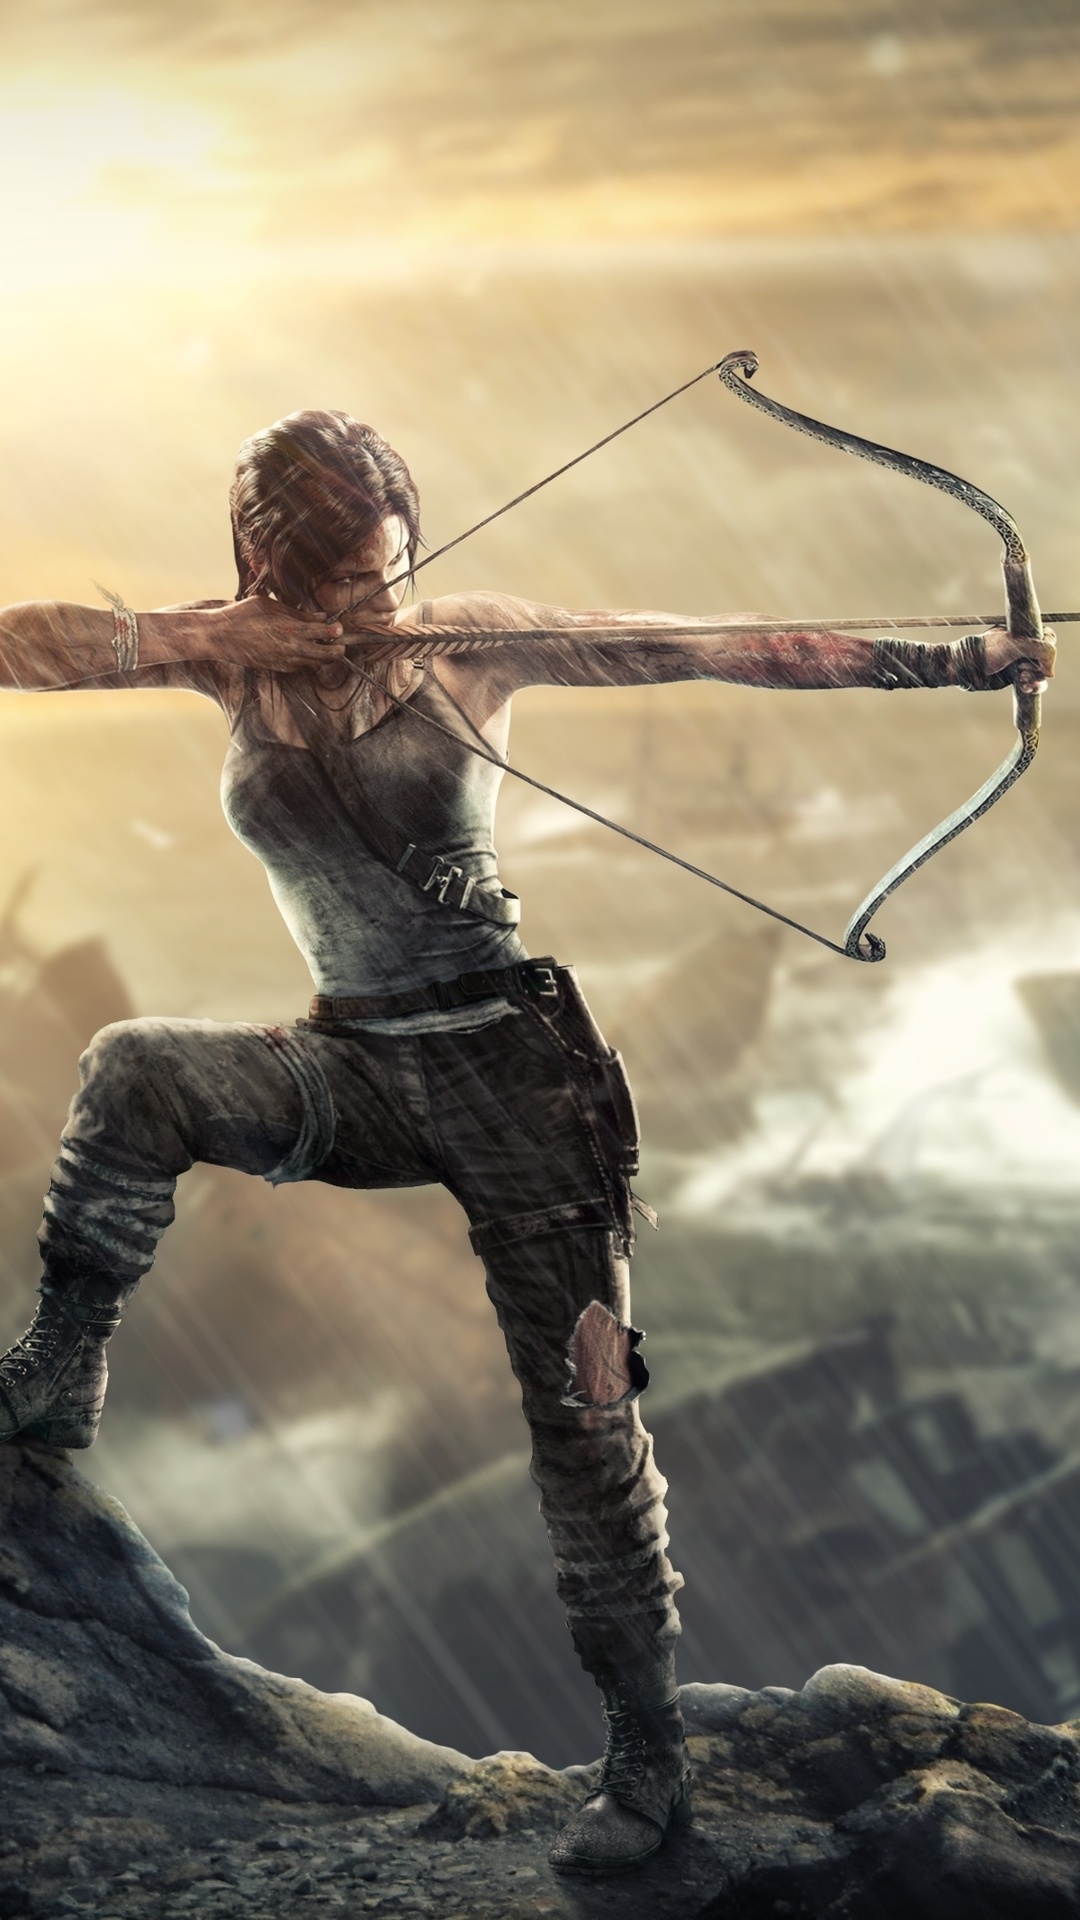 1080x1920 Lara Croft Tomb Raider 4k Iphone 7,6s,6 Plus, Pixel xl ,One